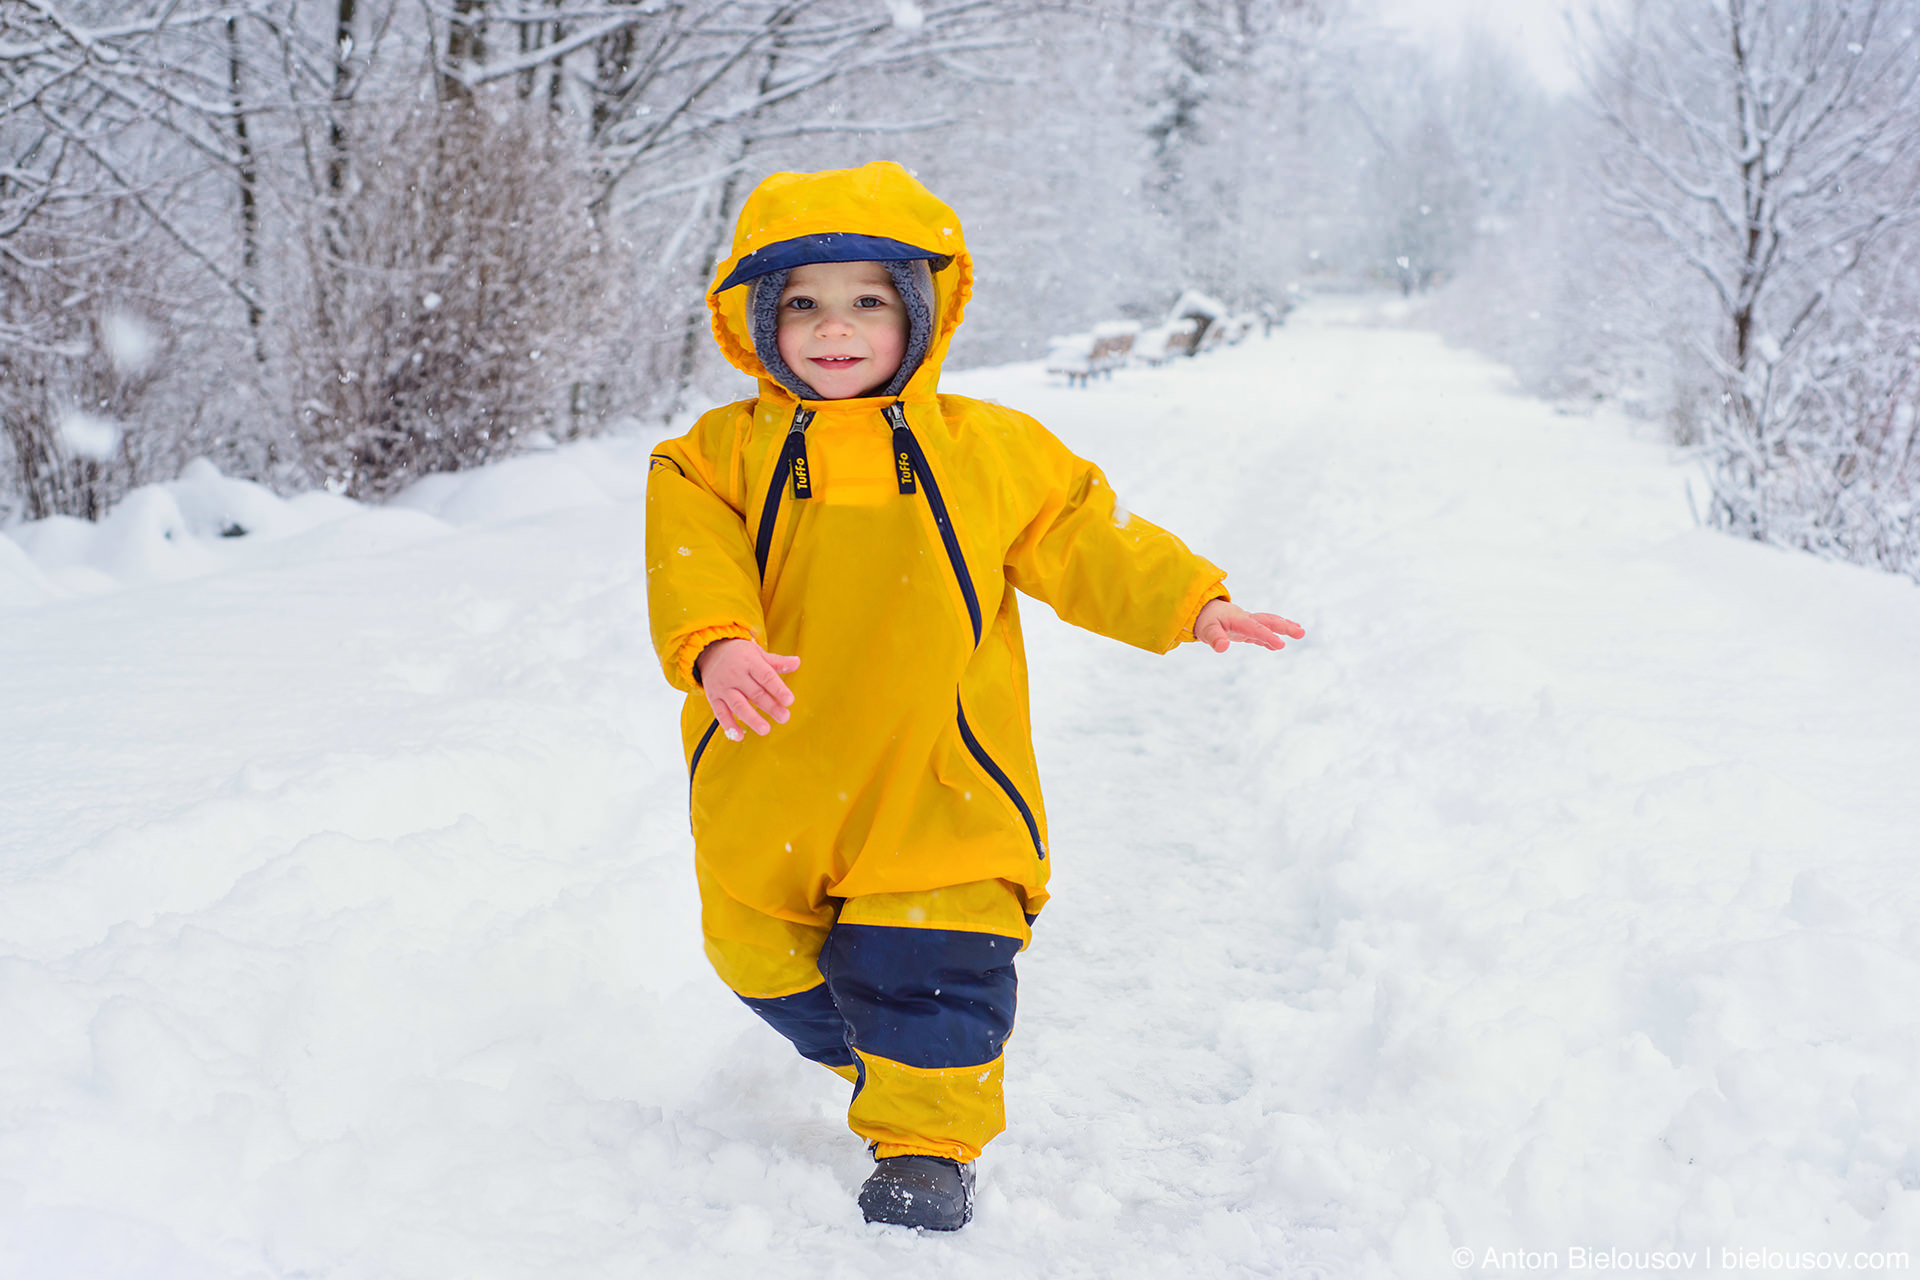 Шаги по снегу. Первые шаги по снегу. Шаги по снегу ребенка. Шаги снег детская. Звук снежка